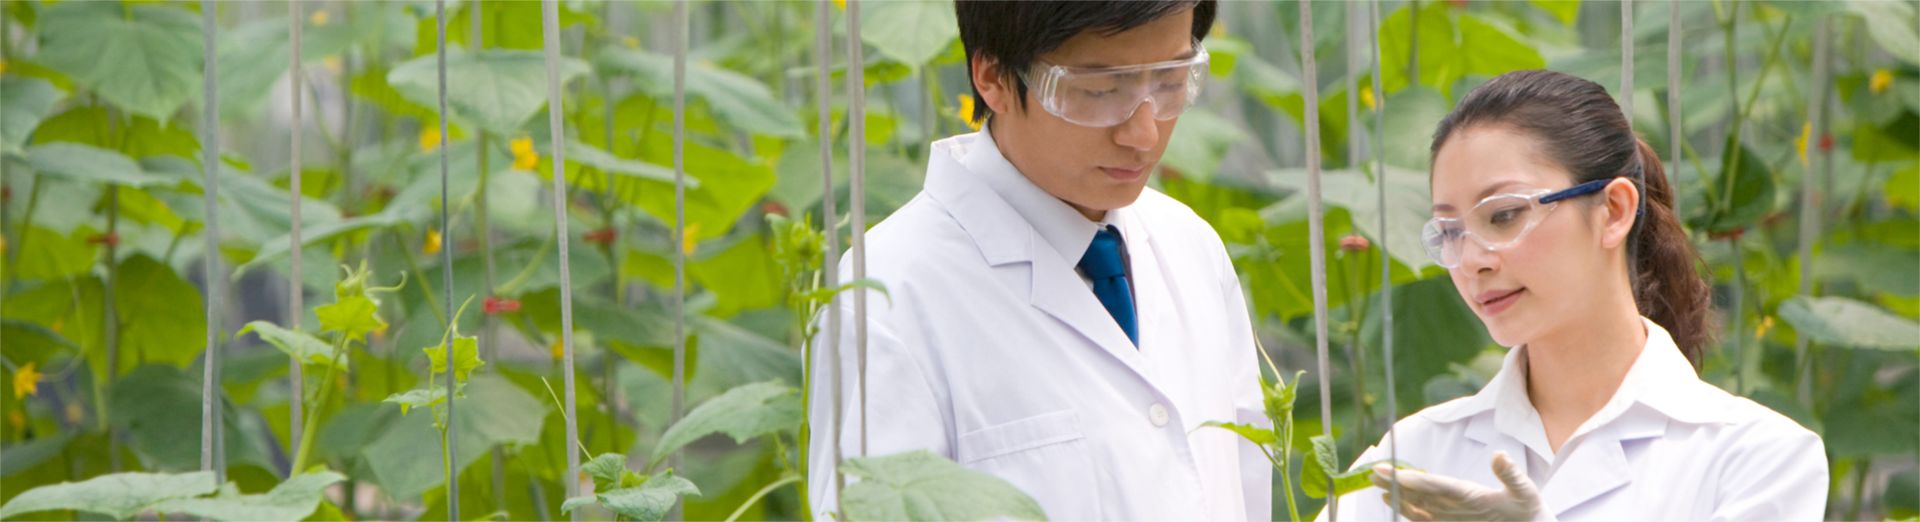 Científicos investigando plantas